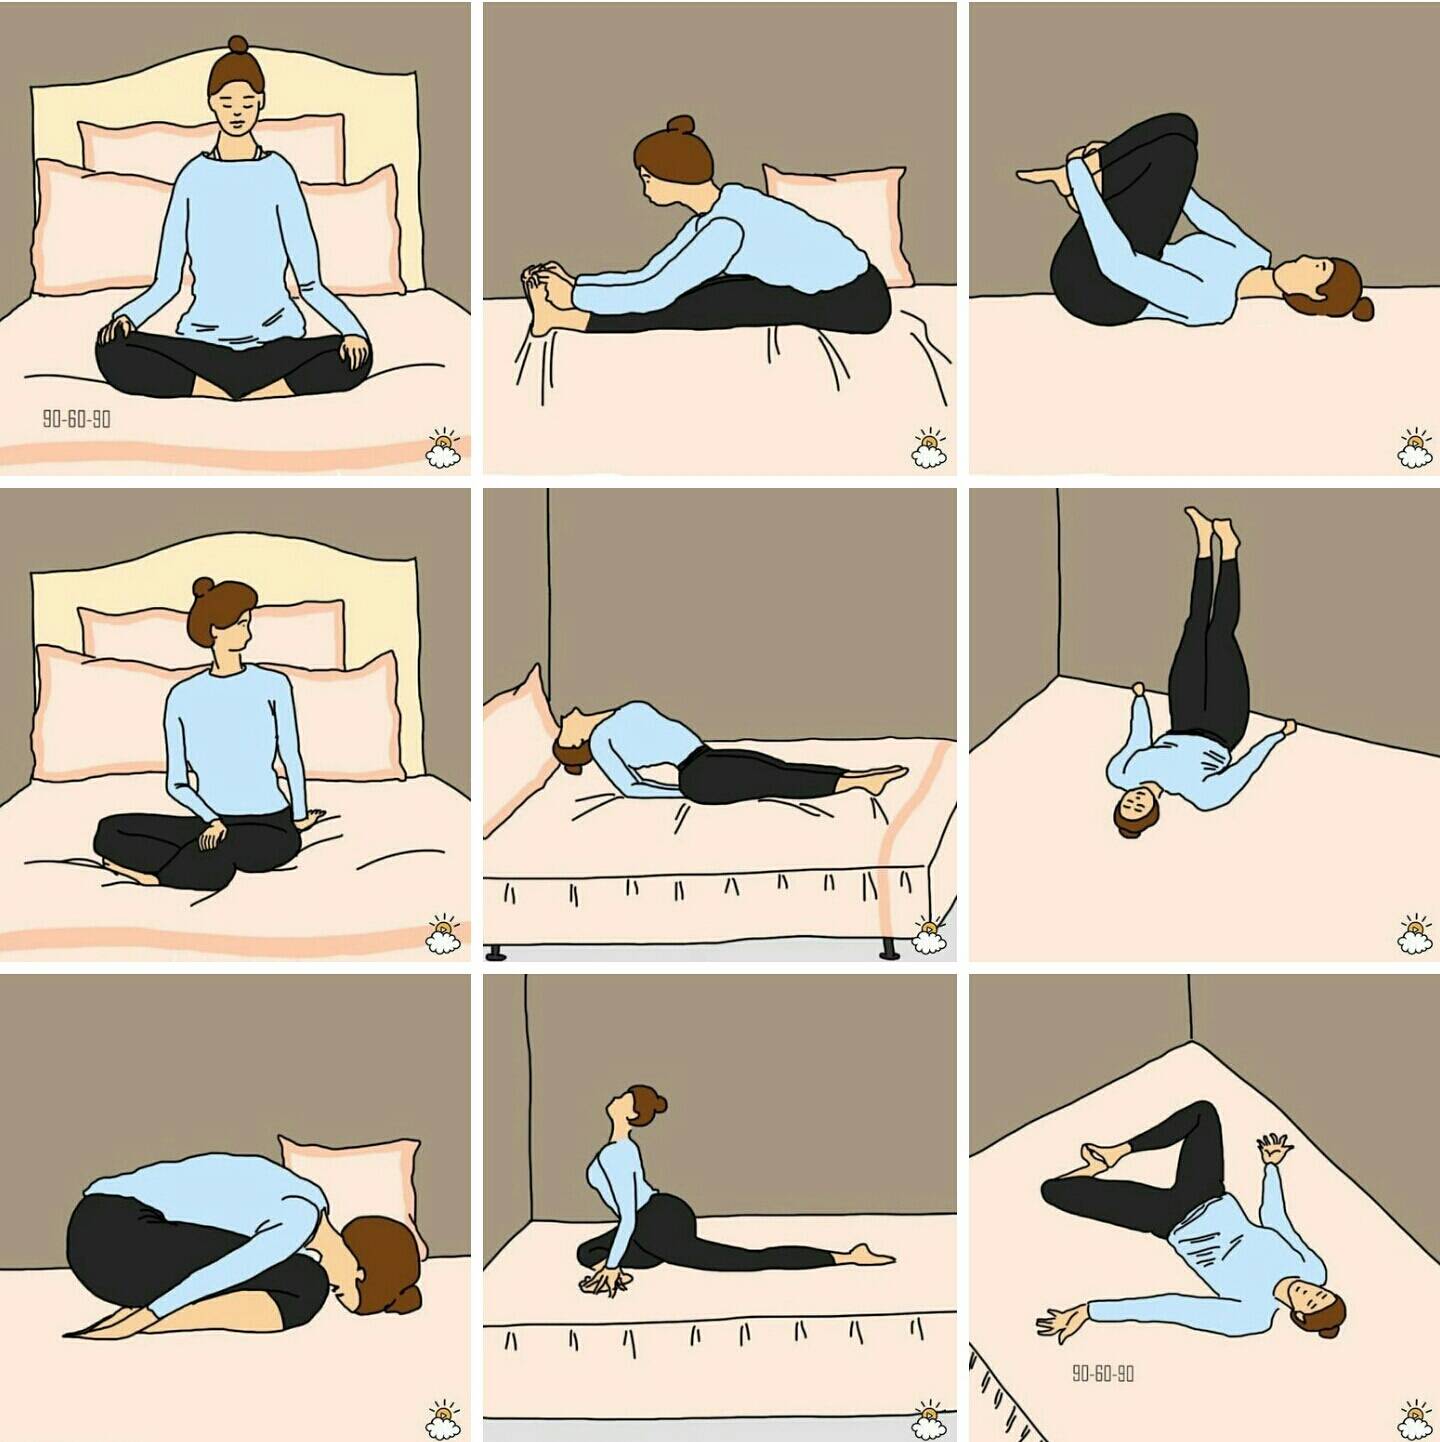 Йога перед сном от бессонницы для начинающих
йога перед сном от бессонницы для начинающих